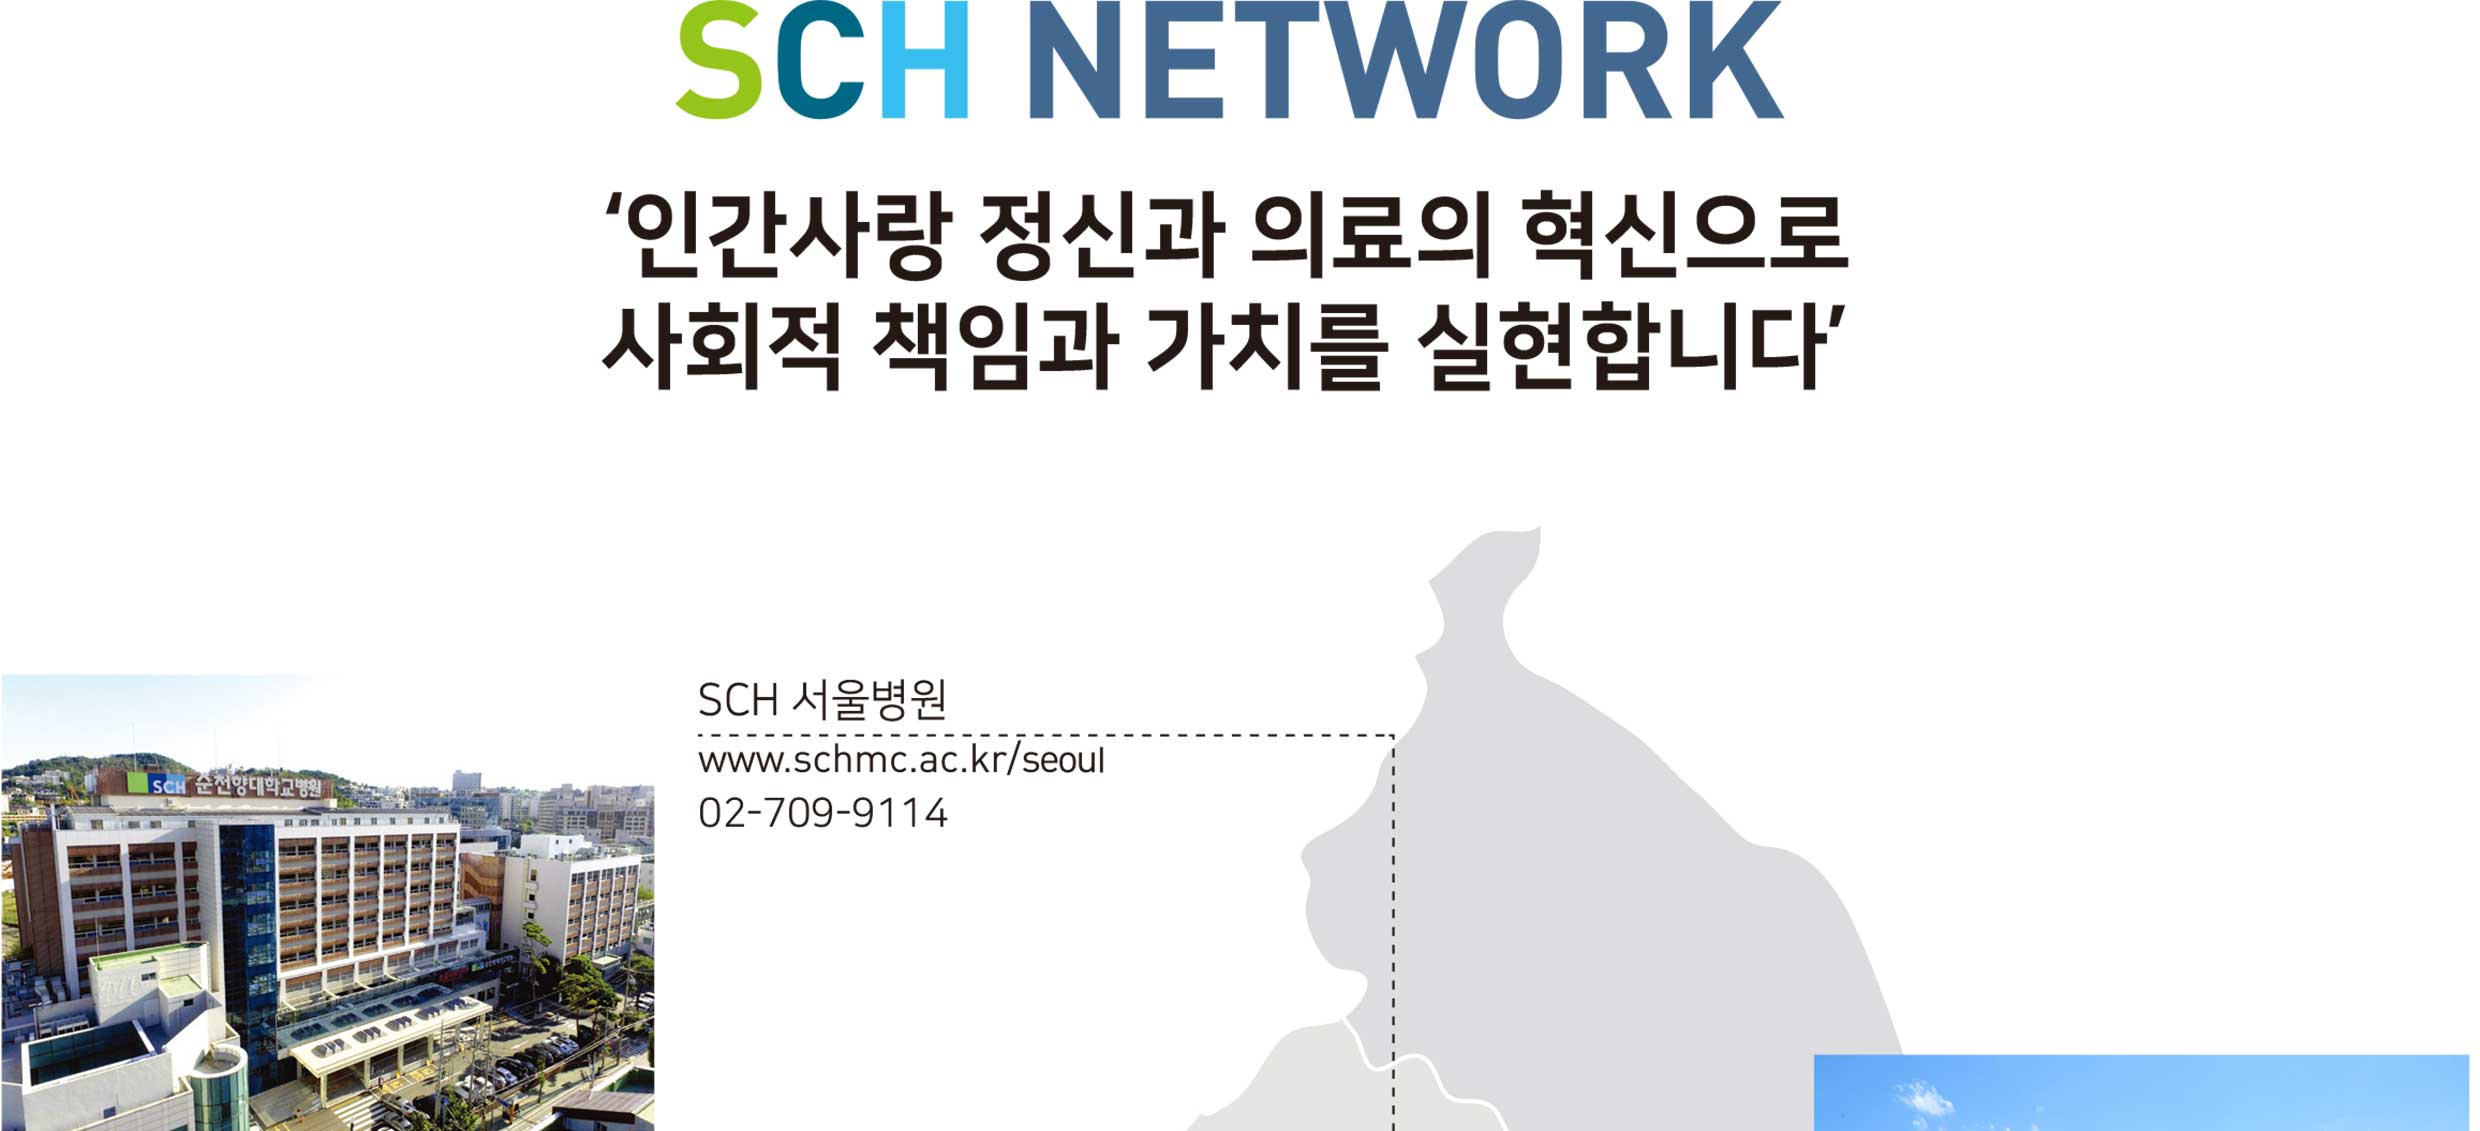 SCH NETWORK 인간사랑 정신과 의료의 혁신으로 사회적 책임과 가치를 실현합니다. SCH 서울병원,www.schmc.ac.kr/seoul,02-709-9114